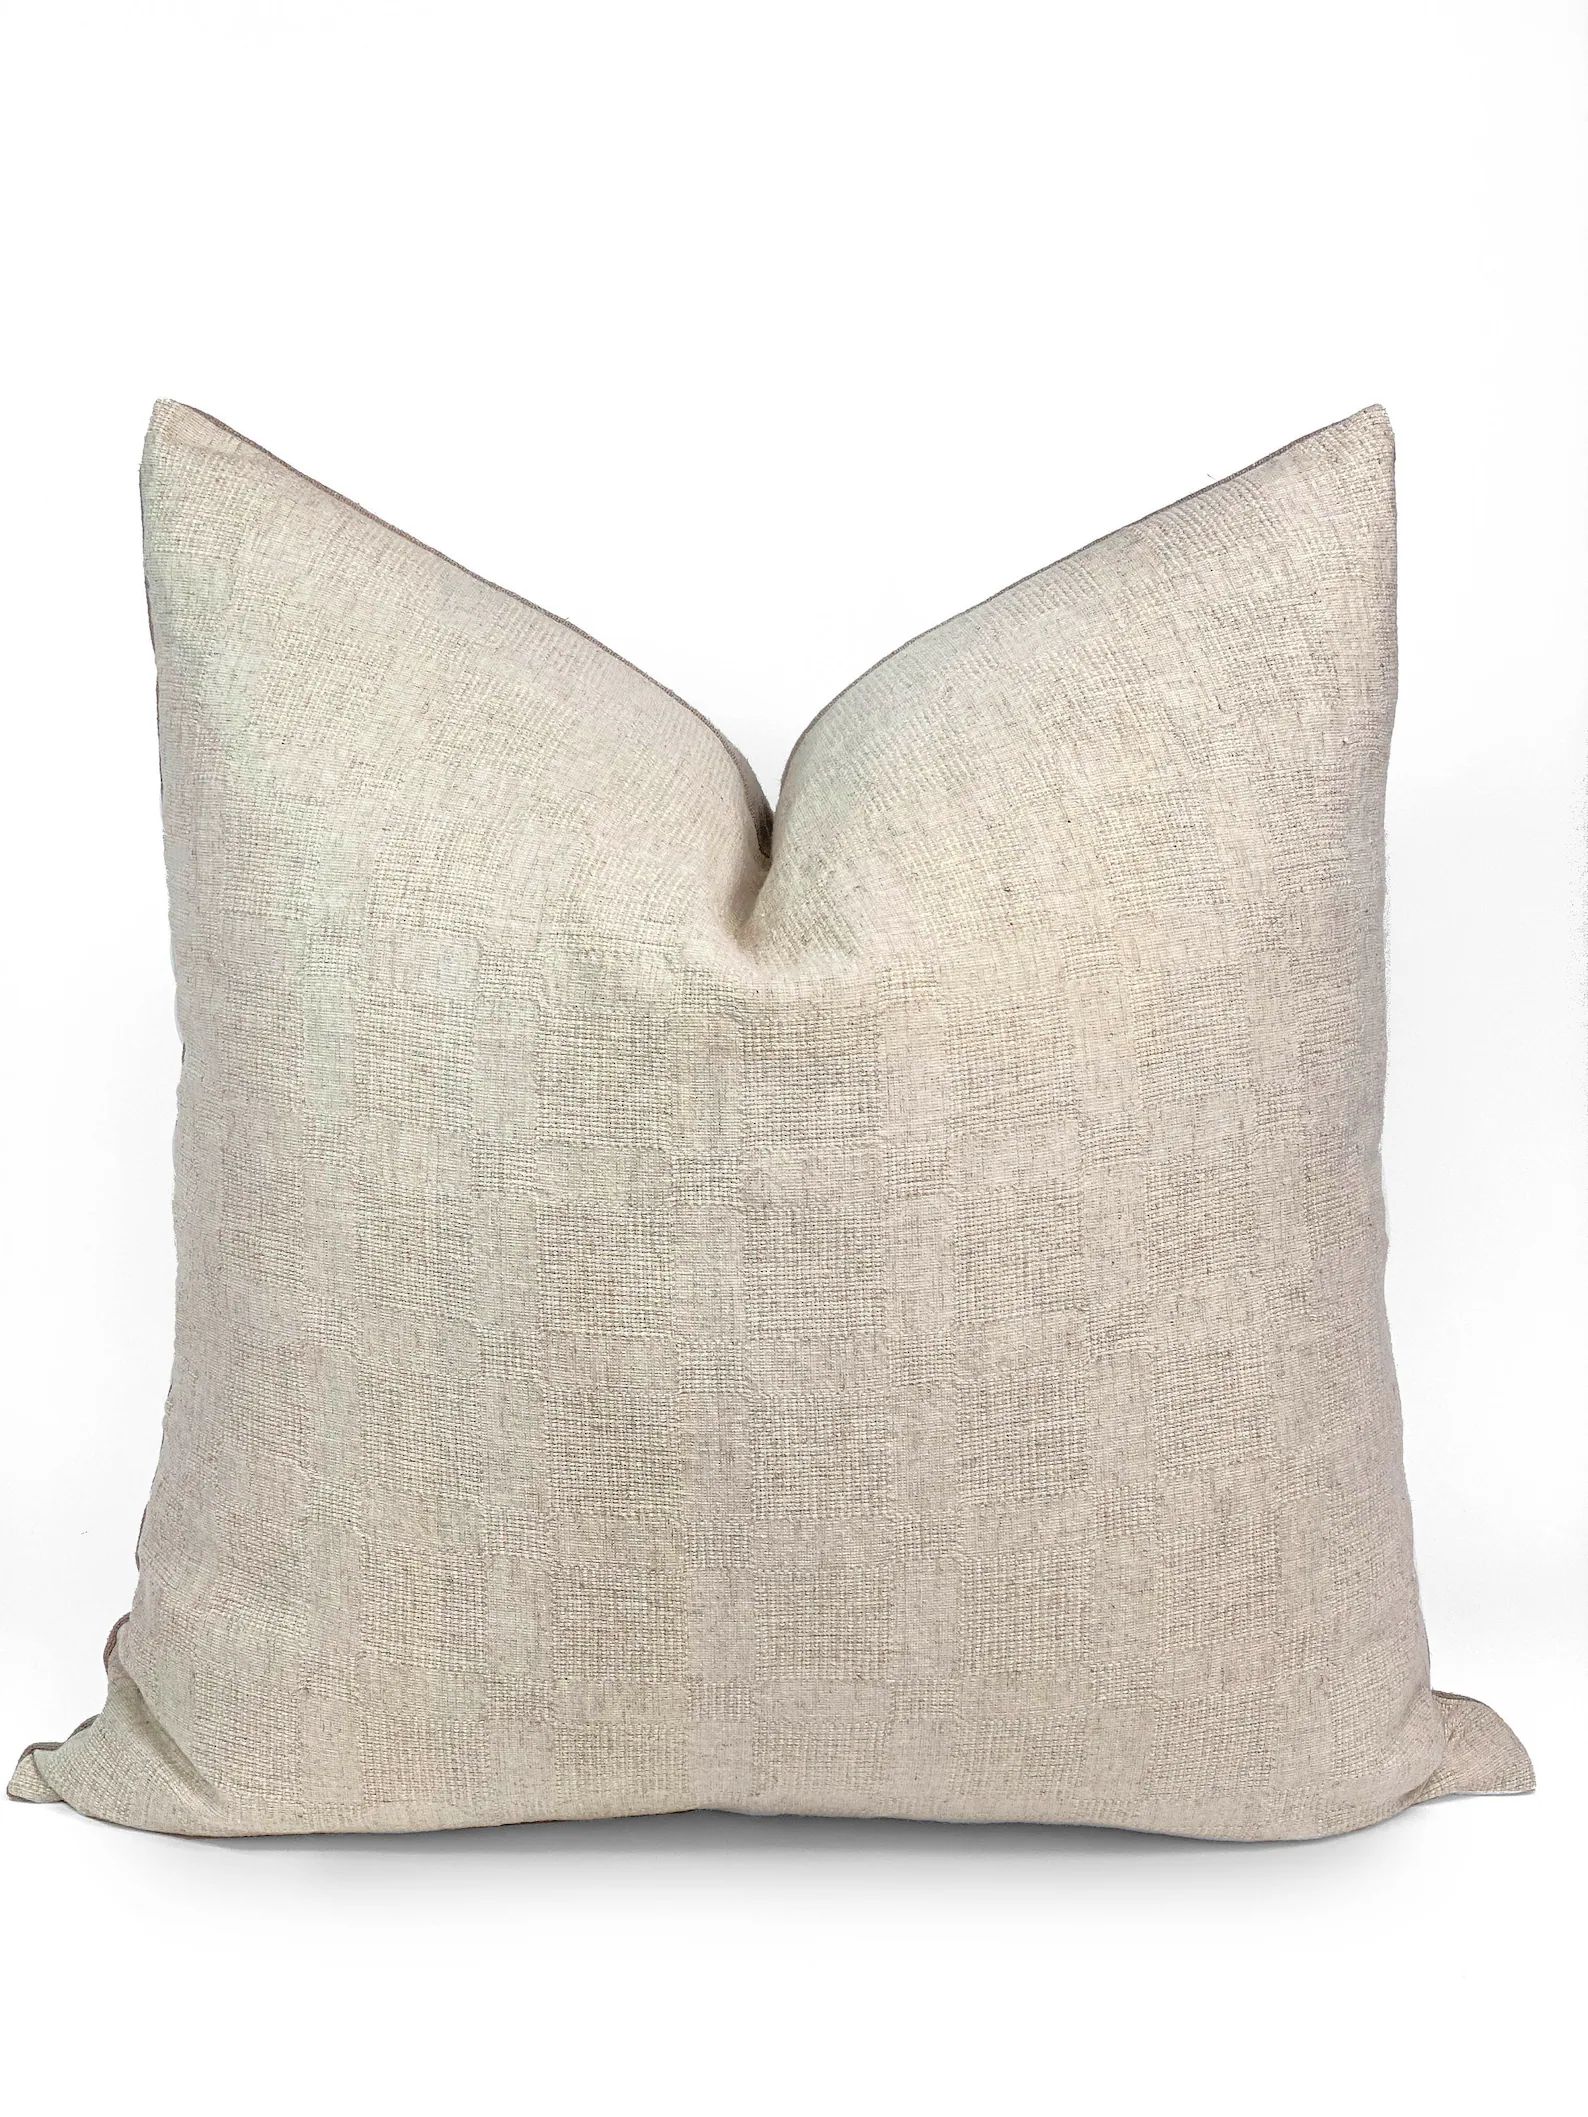 ALDER Beige Woven Pillow Cover, Hmong Pillow, Farmhouse Pillow, Textured Pillow, Neutral Pillow, ... | Etsy (US)